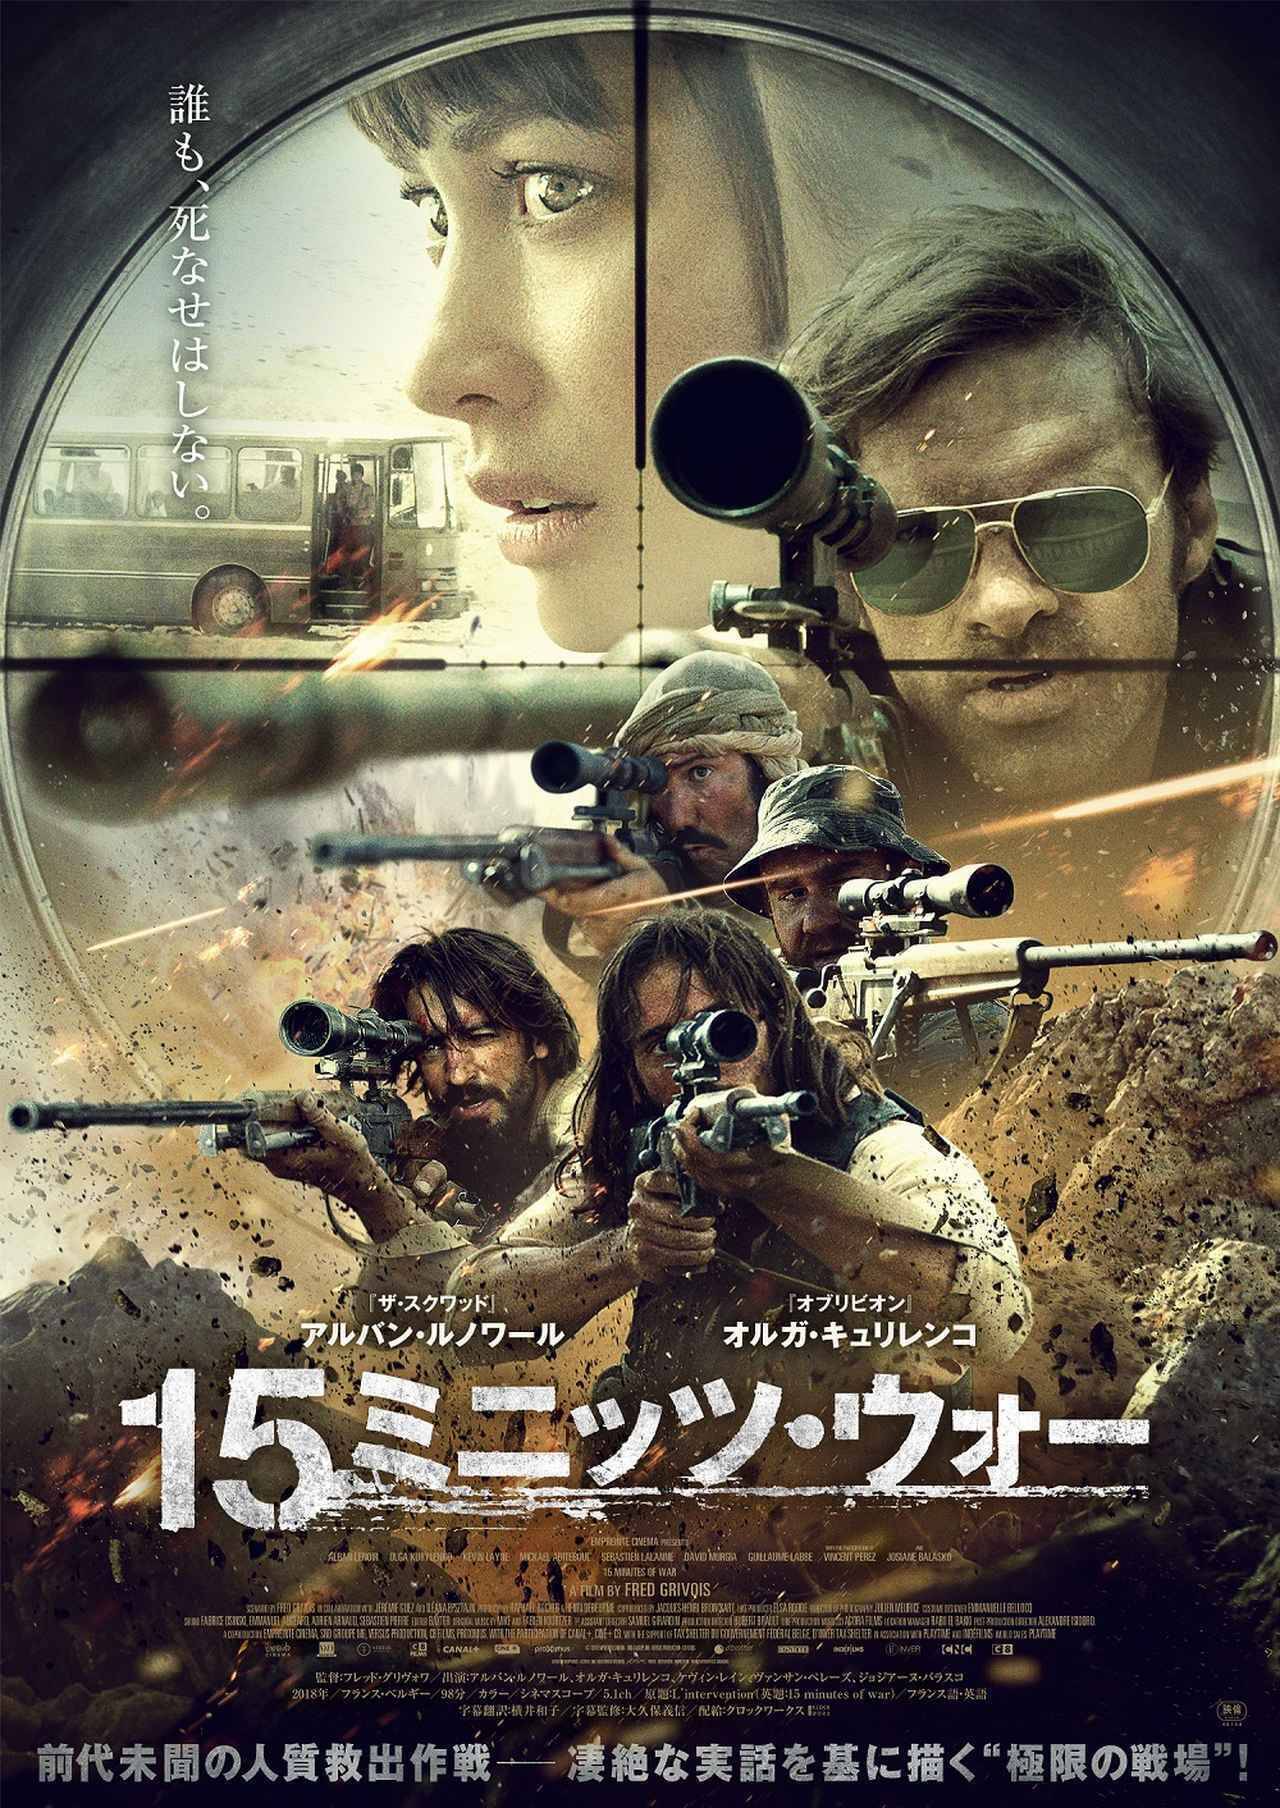 見る人を戦場に引きずりこむ映画 15ミニッツ ウォー の日本公開が決定 19年7月11日 エキサイトニュース